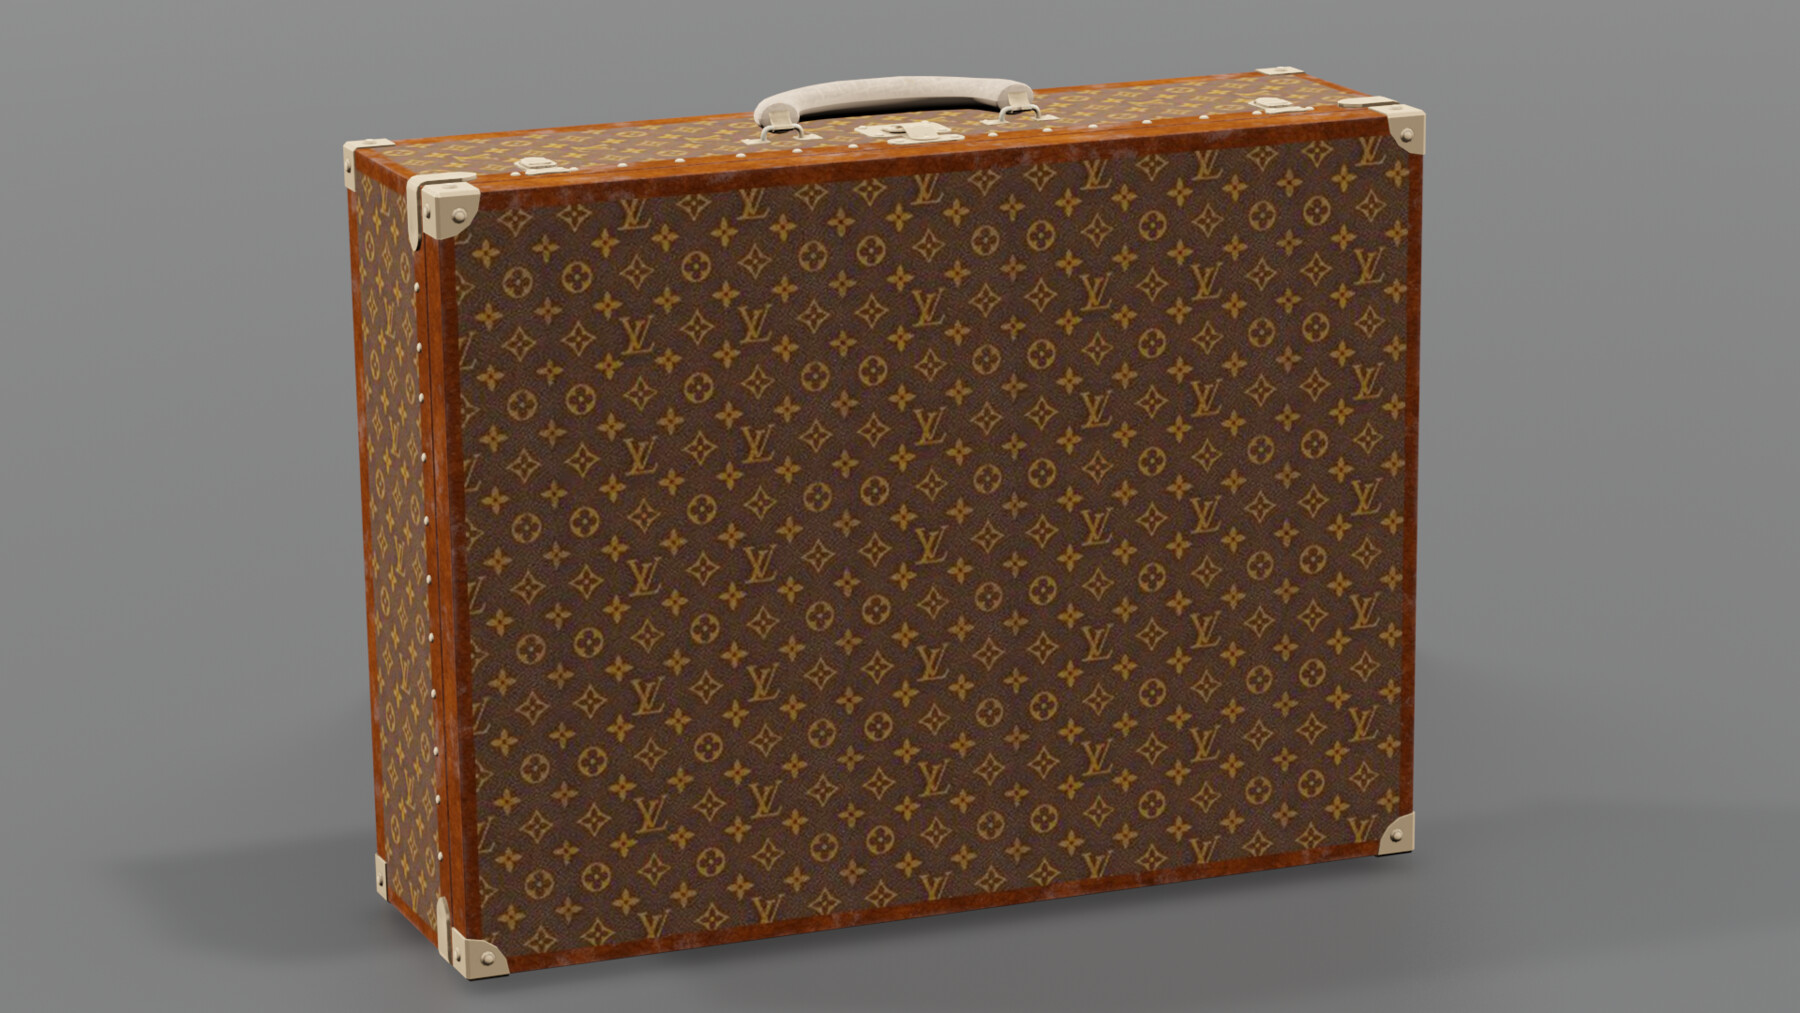 Large Vintage Louis Vuitton Suitcase